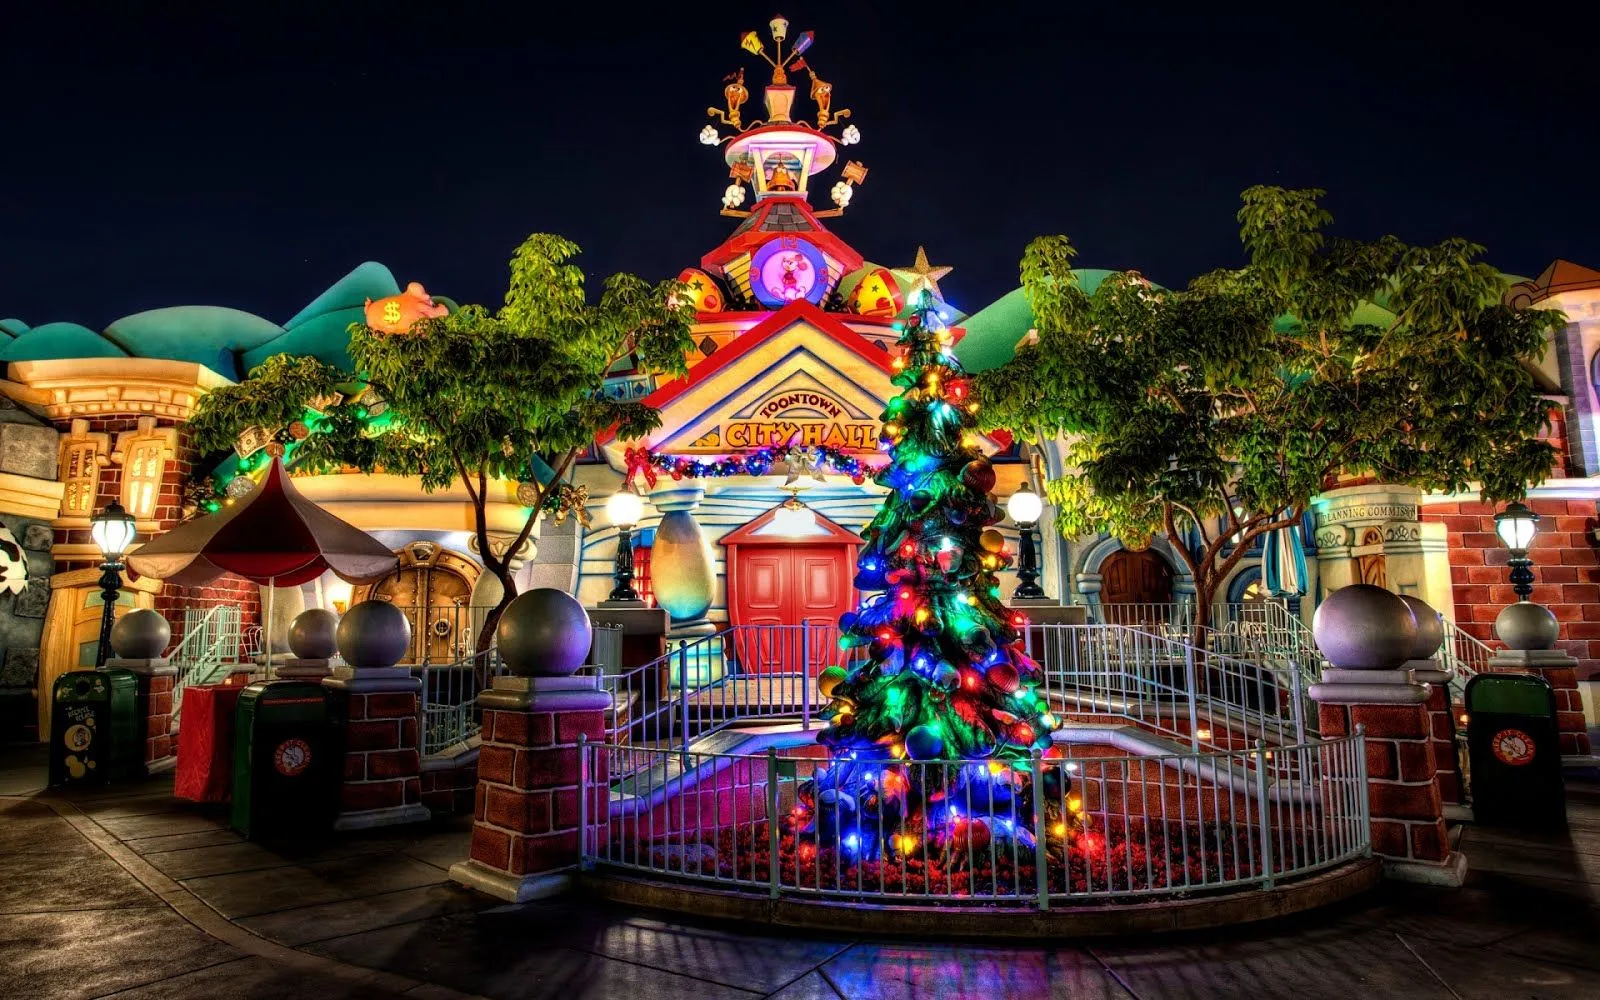 Pinito de navidad con luces de colores en Disneylandia | Imagenes ...